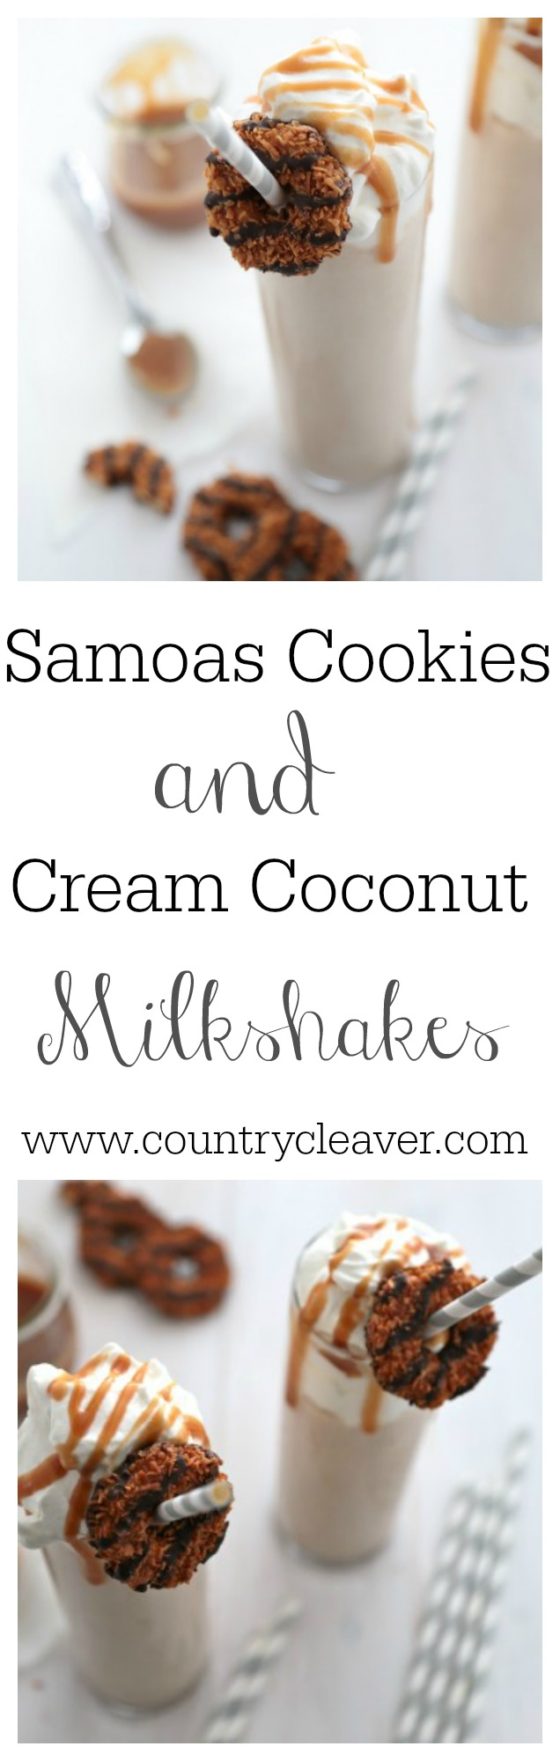 Samoas Cookies and Cream Coconut Milkshakes